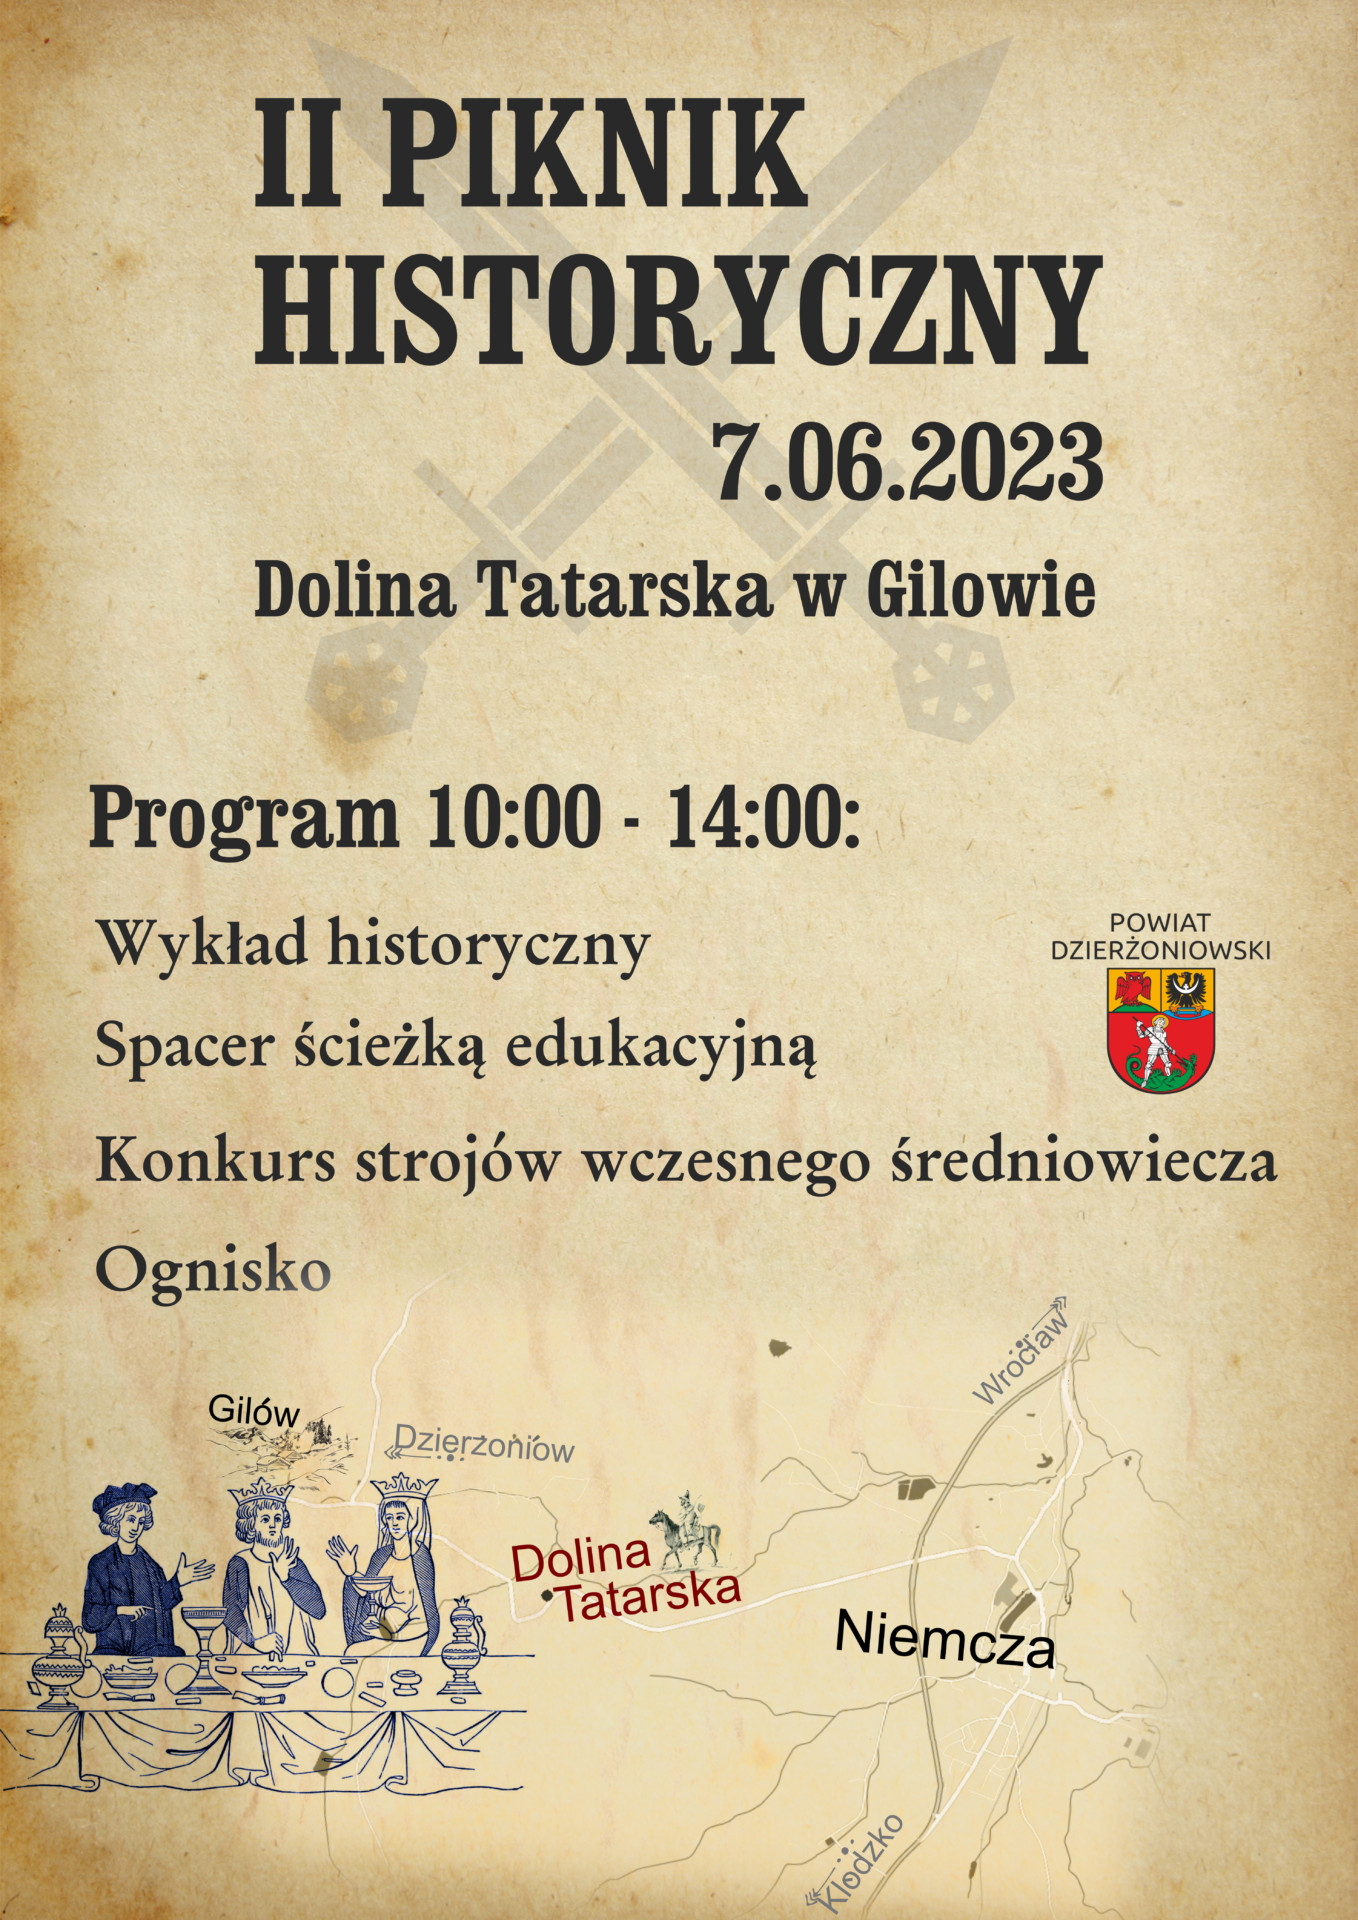 Plakat przedstawiający program pikniku historycznego